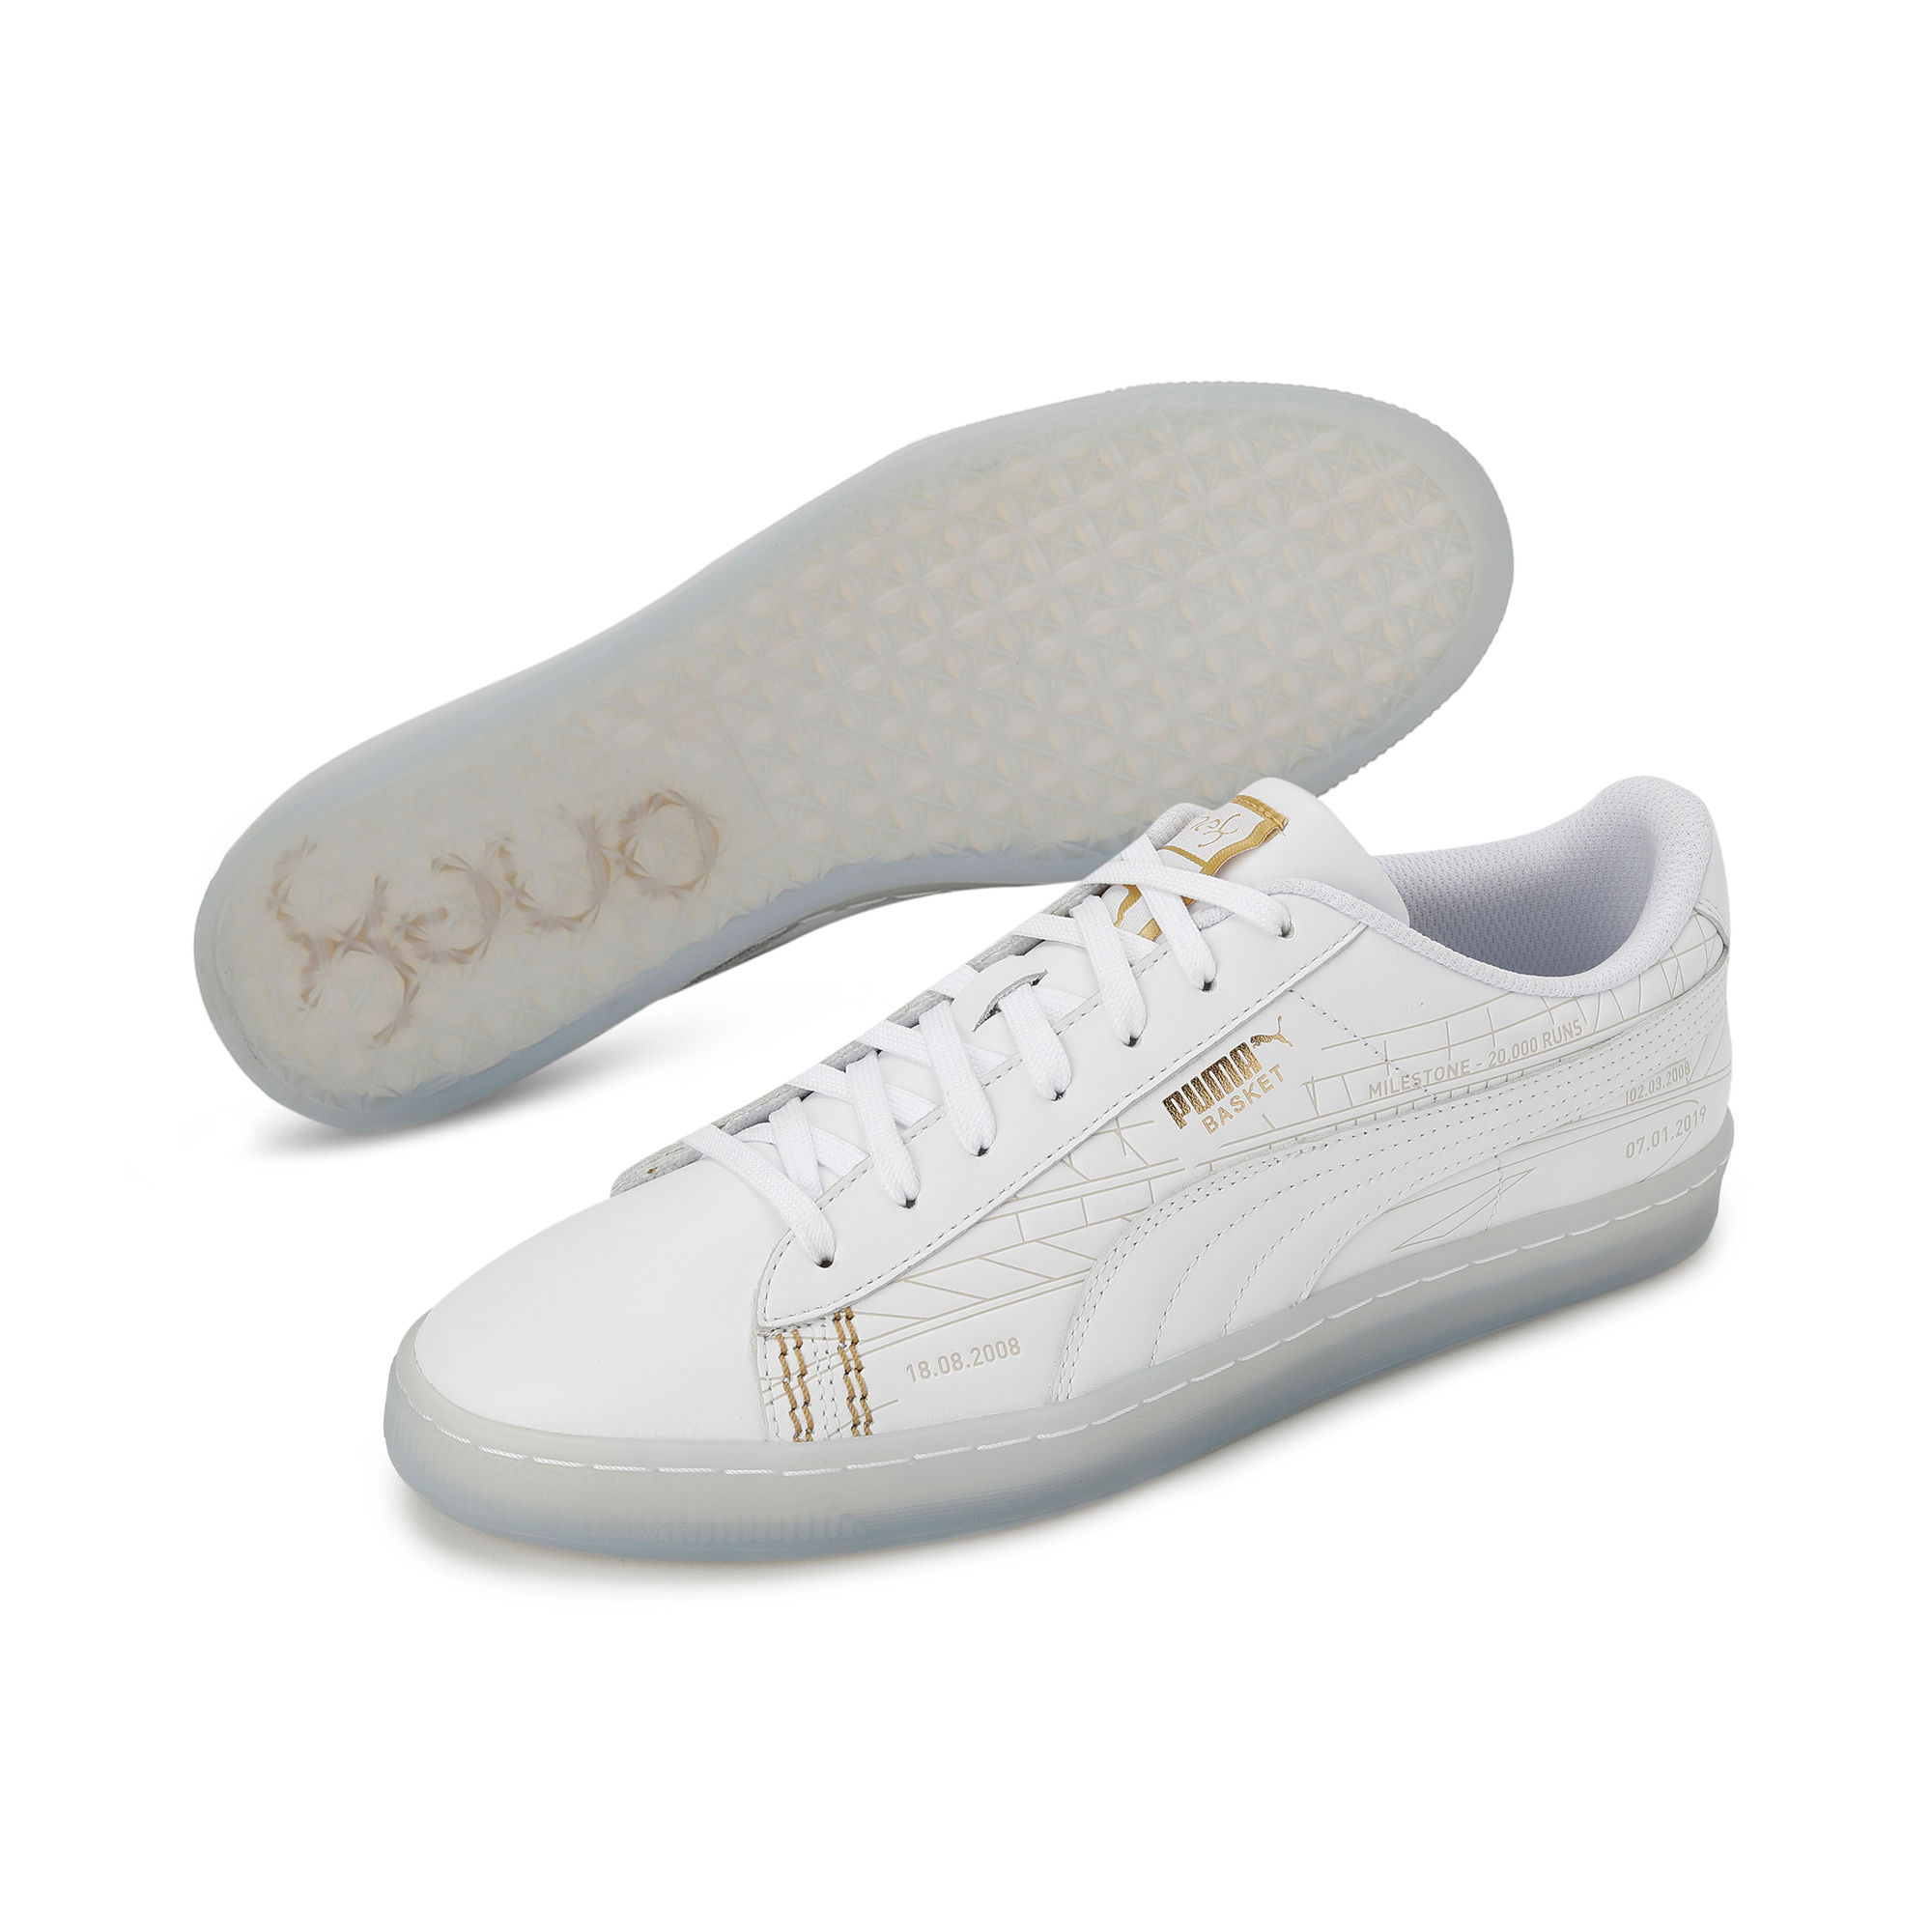 Buy PUMA ONE8 Cricket Shoes online at ProCricketShop.com – Procricketshop